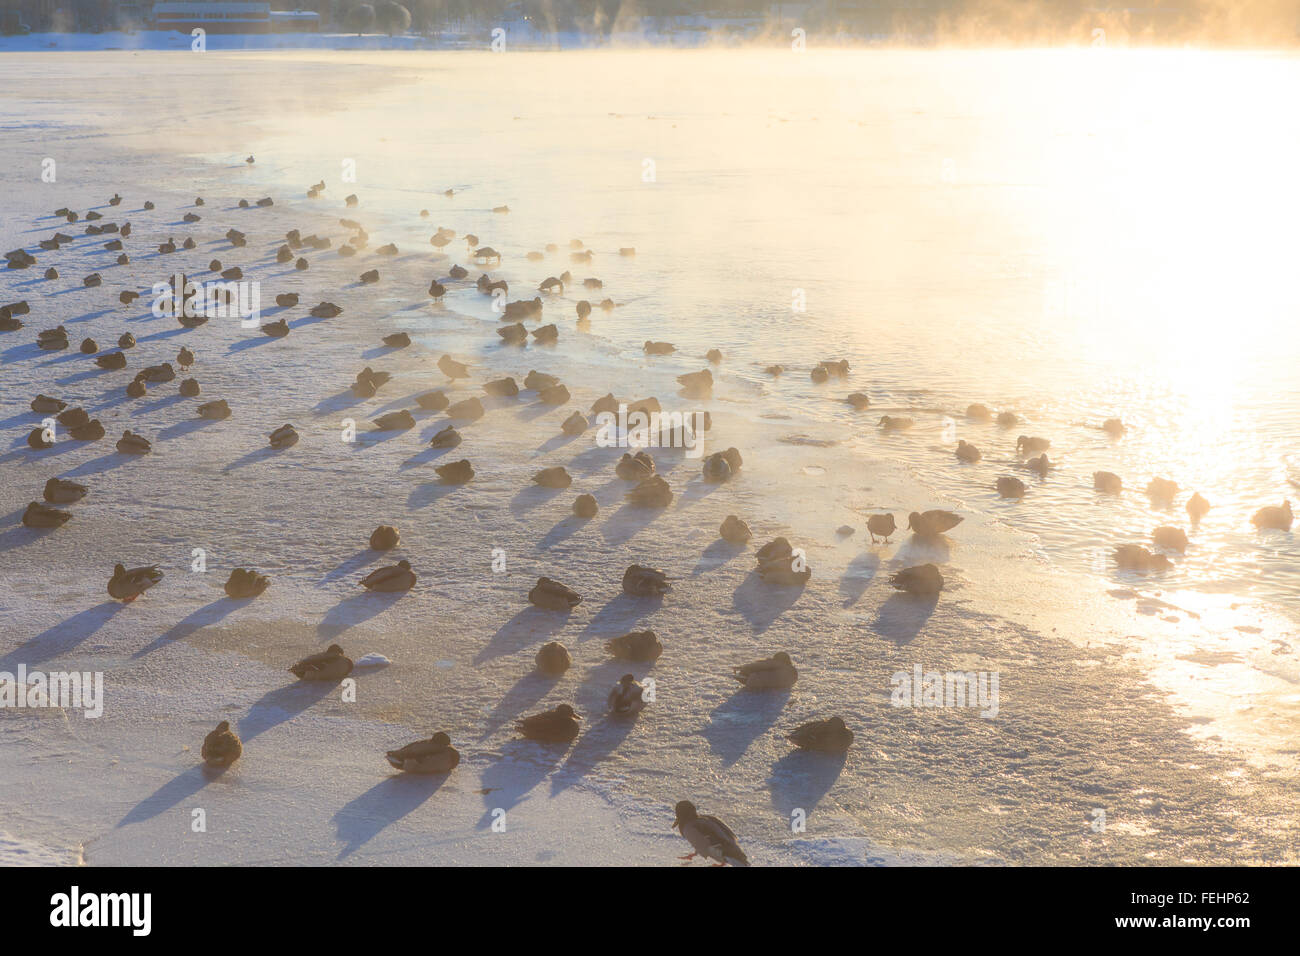 Ducks on ice freezing cold morning Stock Photo